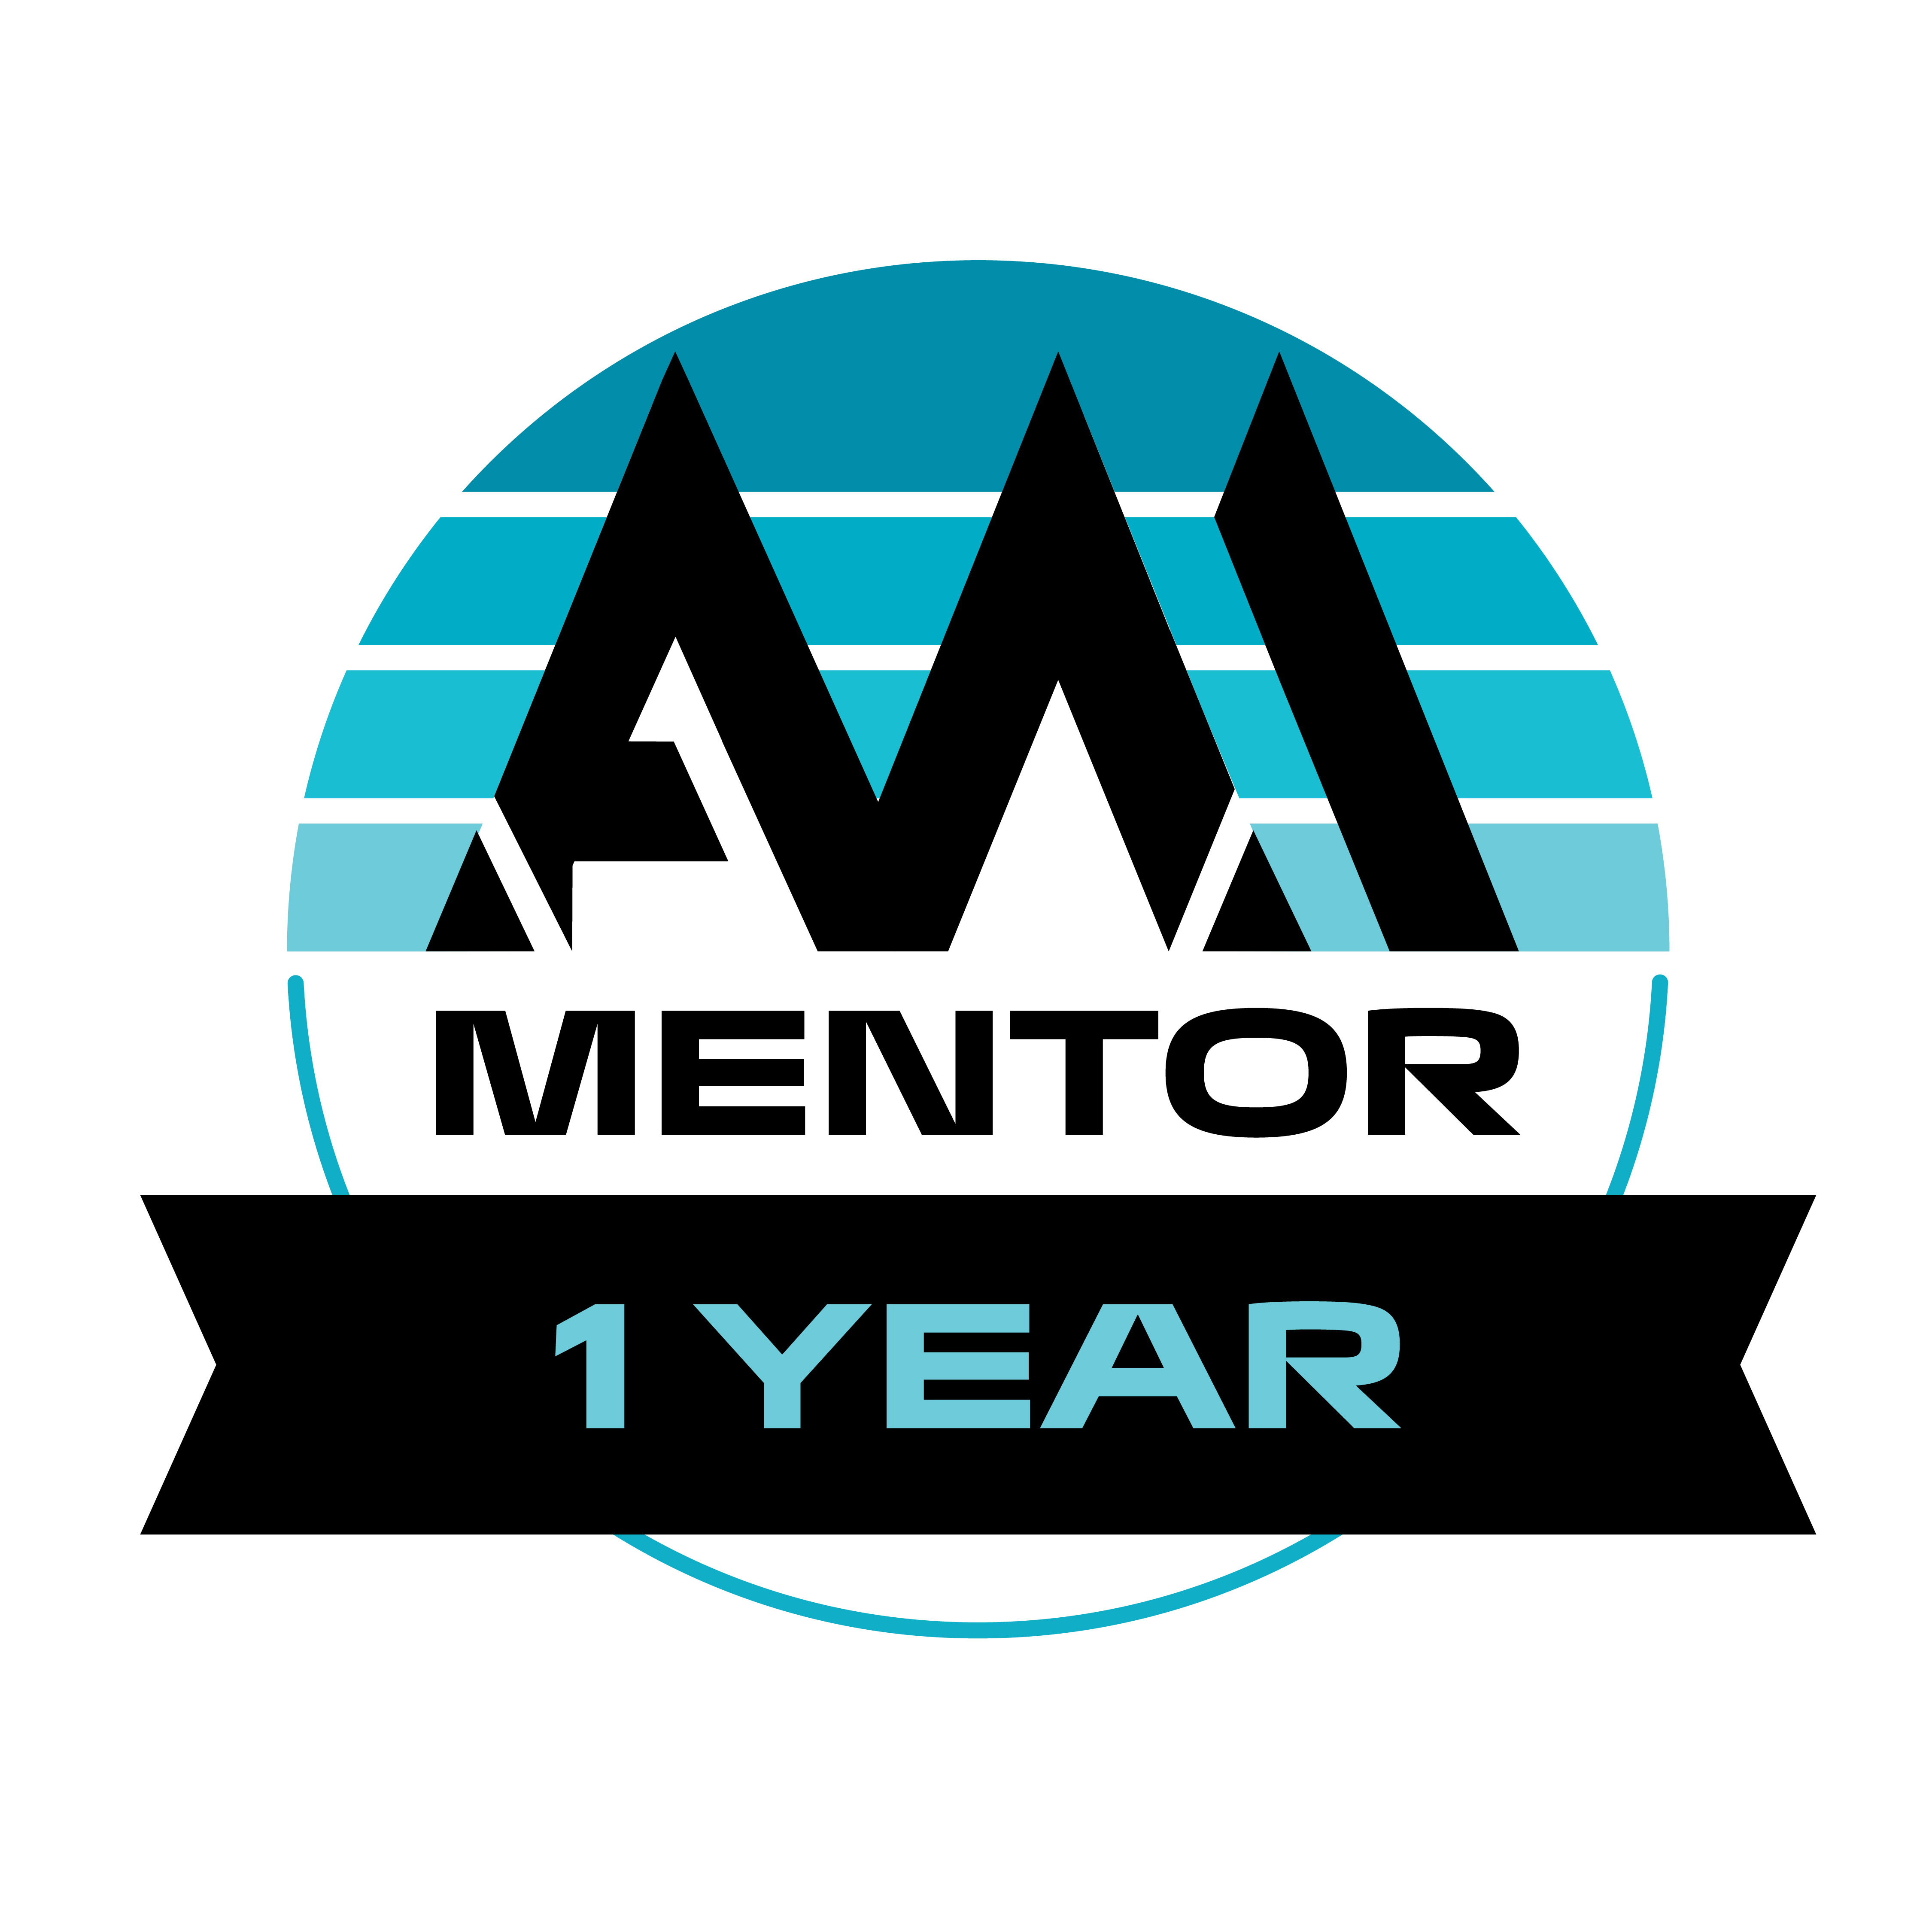 1 Year Mentor